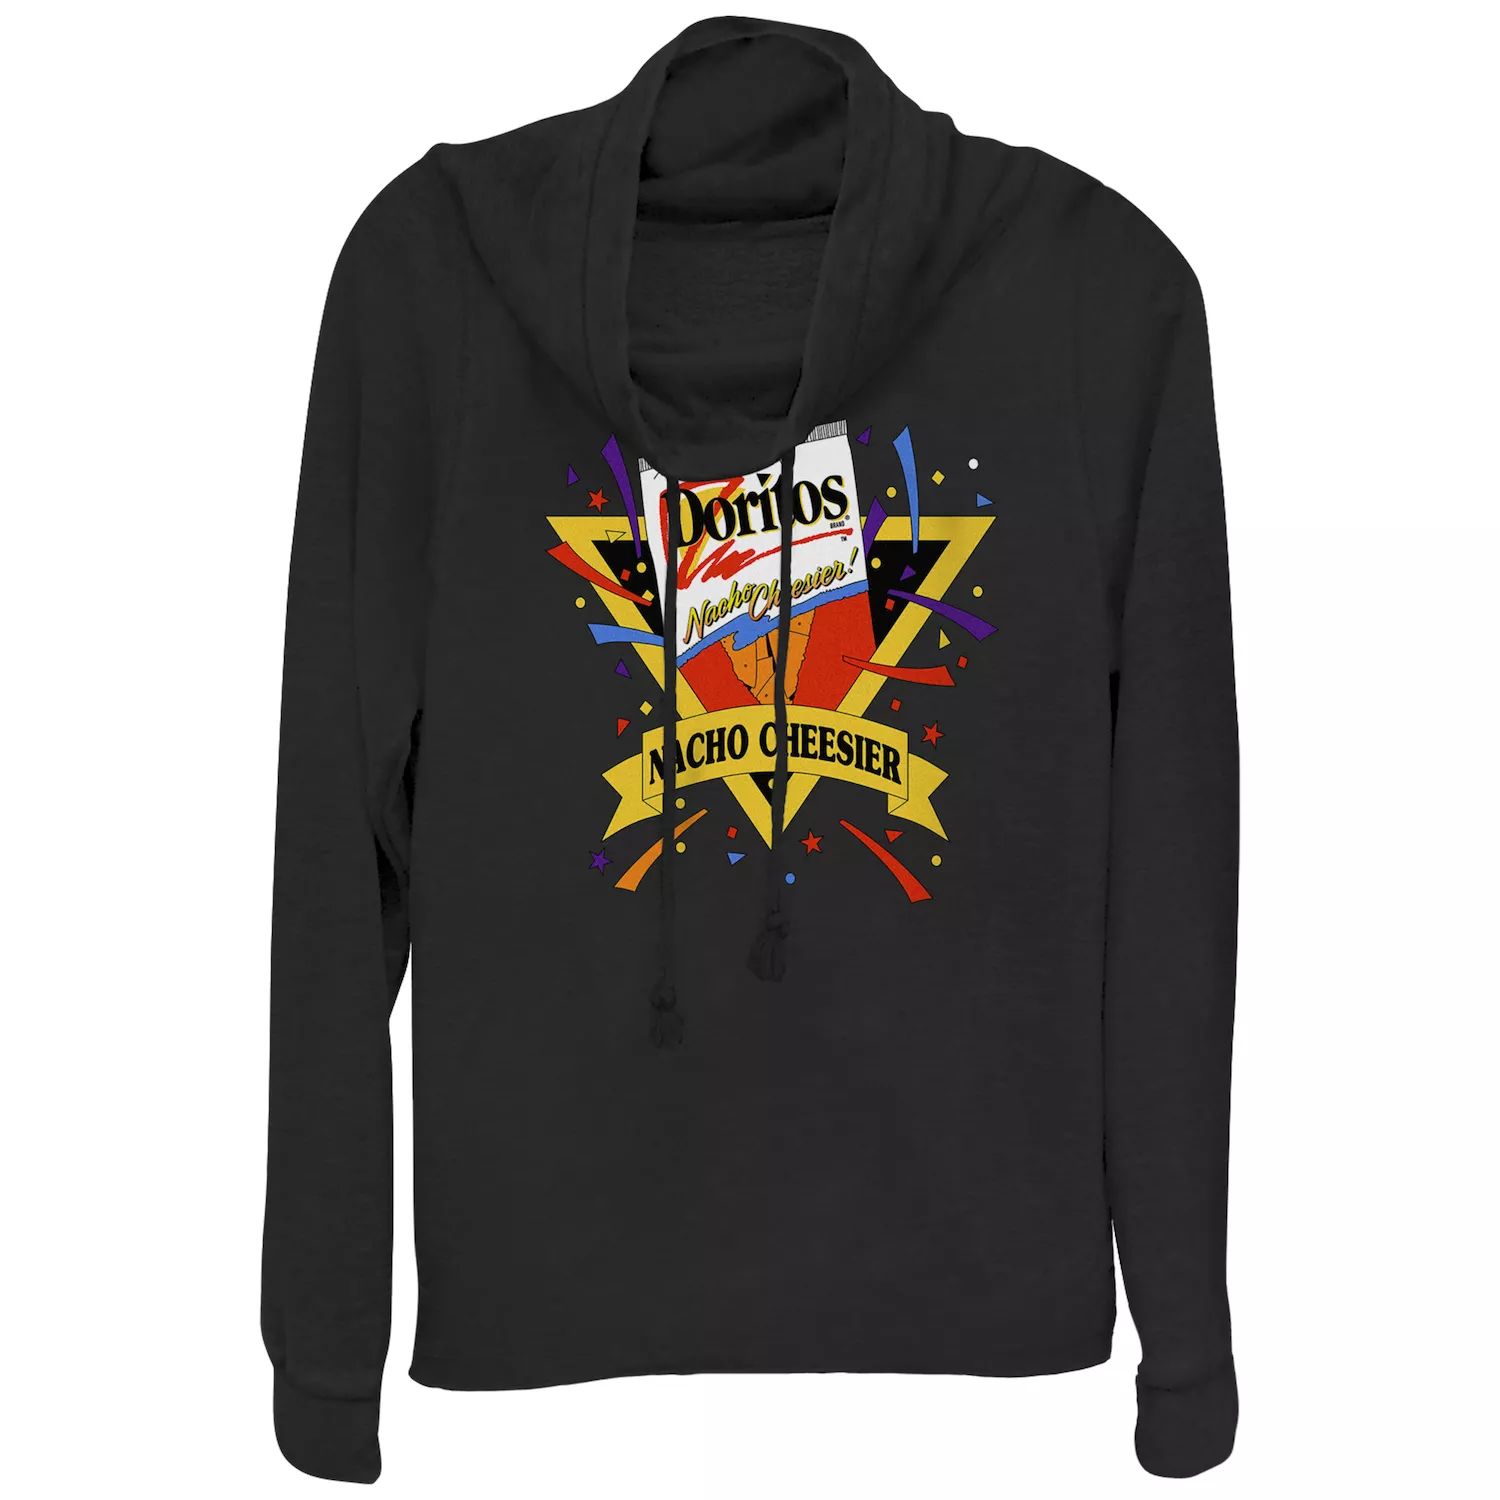 Пуловер с воротником-хомутом и винтажным логотипом Doritos Nacho Cheesier для юниоров Doritos doritos flamin hot 175 gm